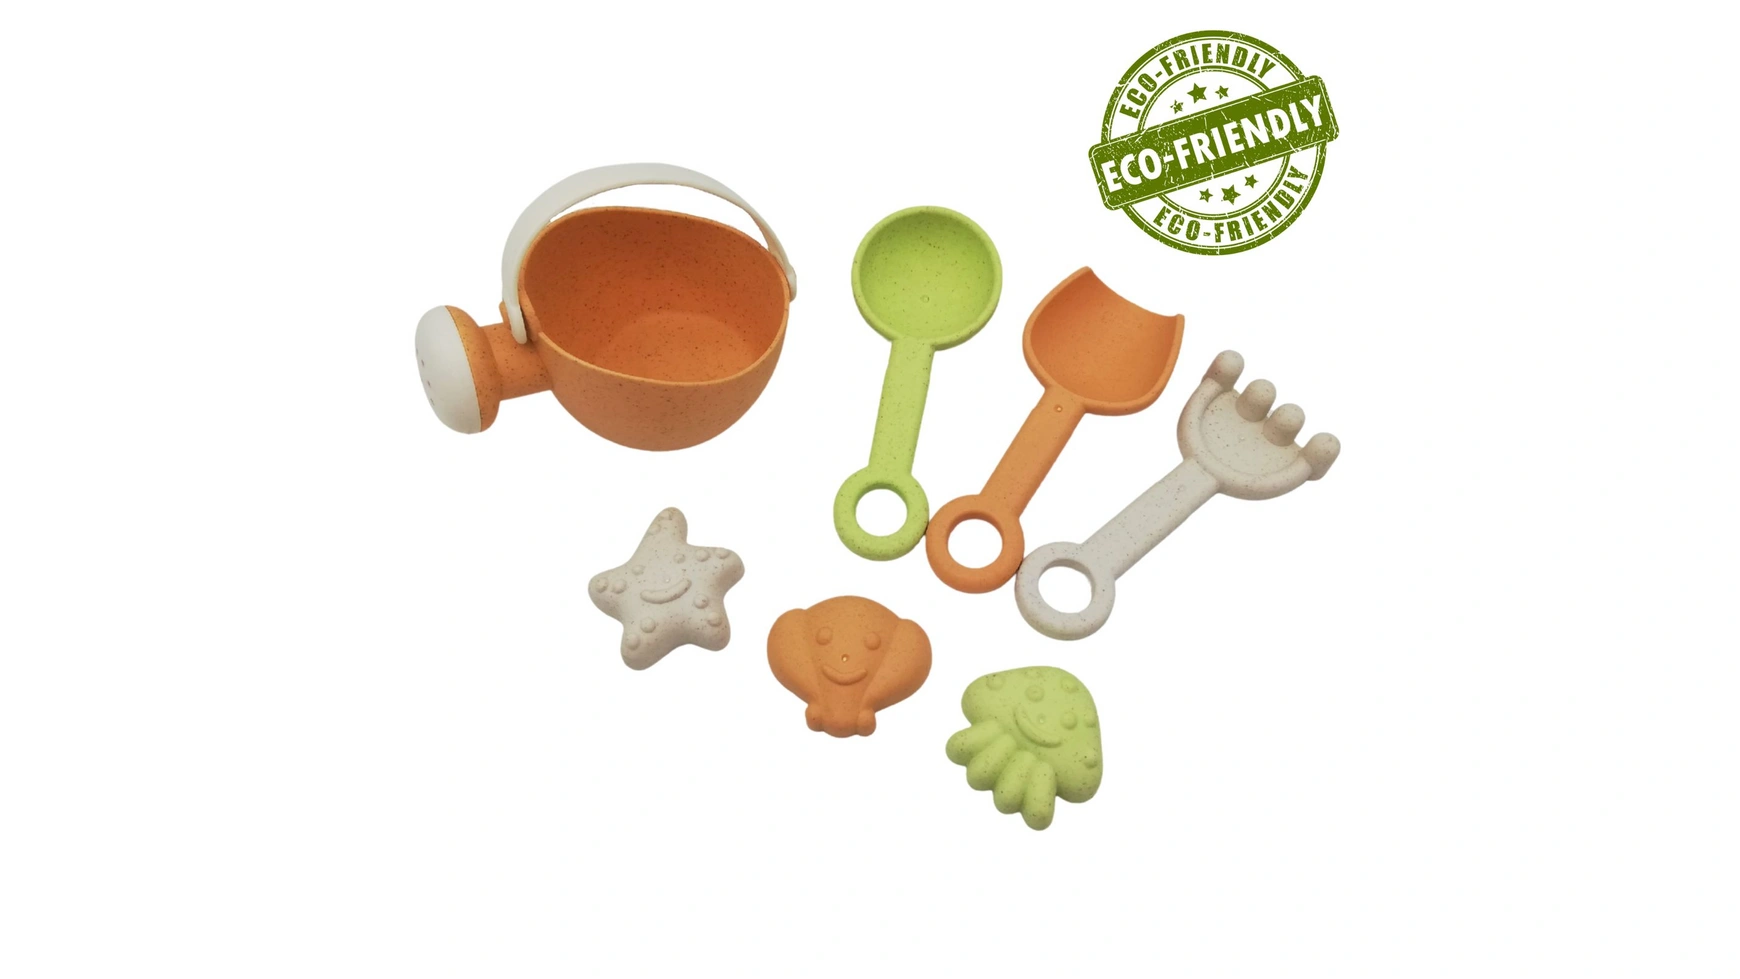 Alldoro Мини-игрушки для песка, набор из 7 предметов с лейкой, экологически чистые